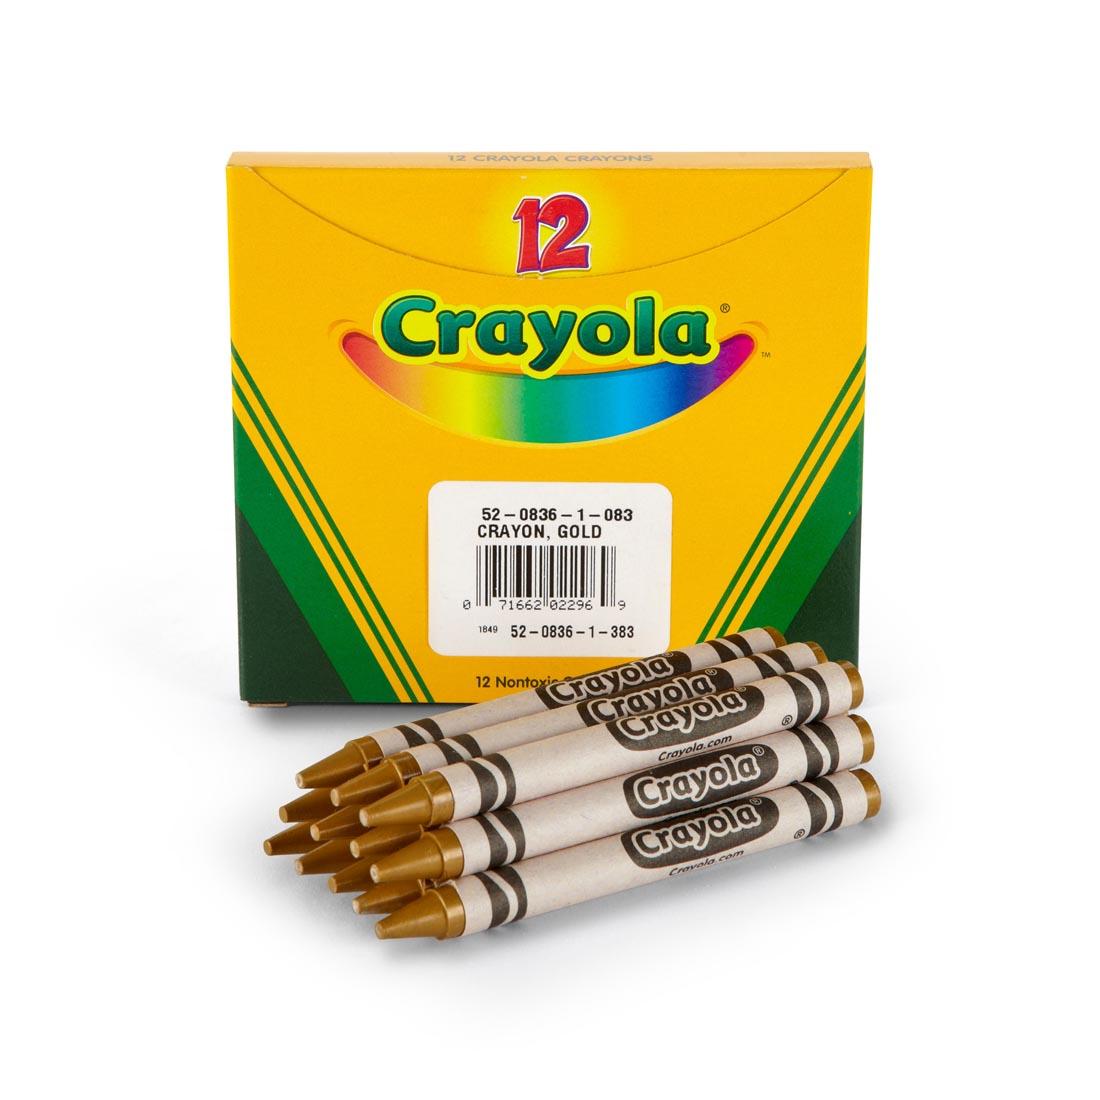 Box of Crayola Regular Crayon Refills with 12 Metallic Gold Crayons